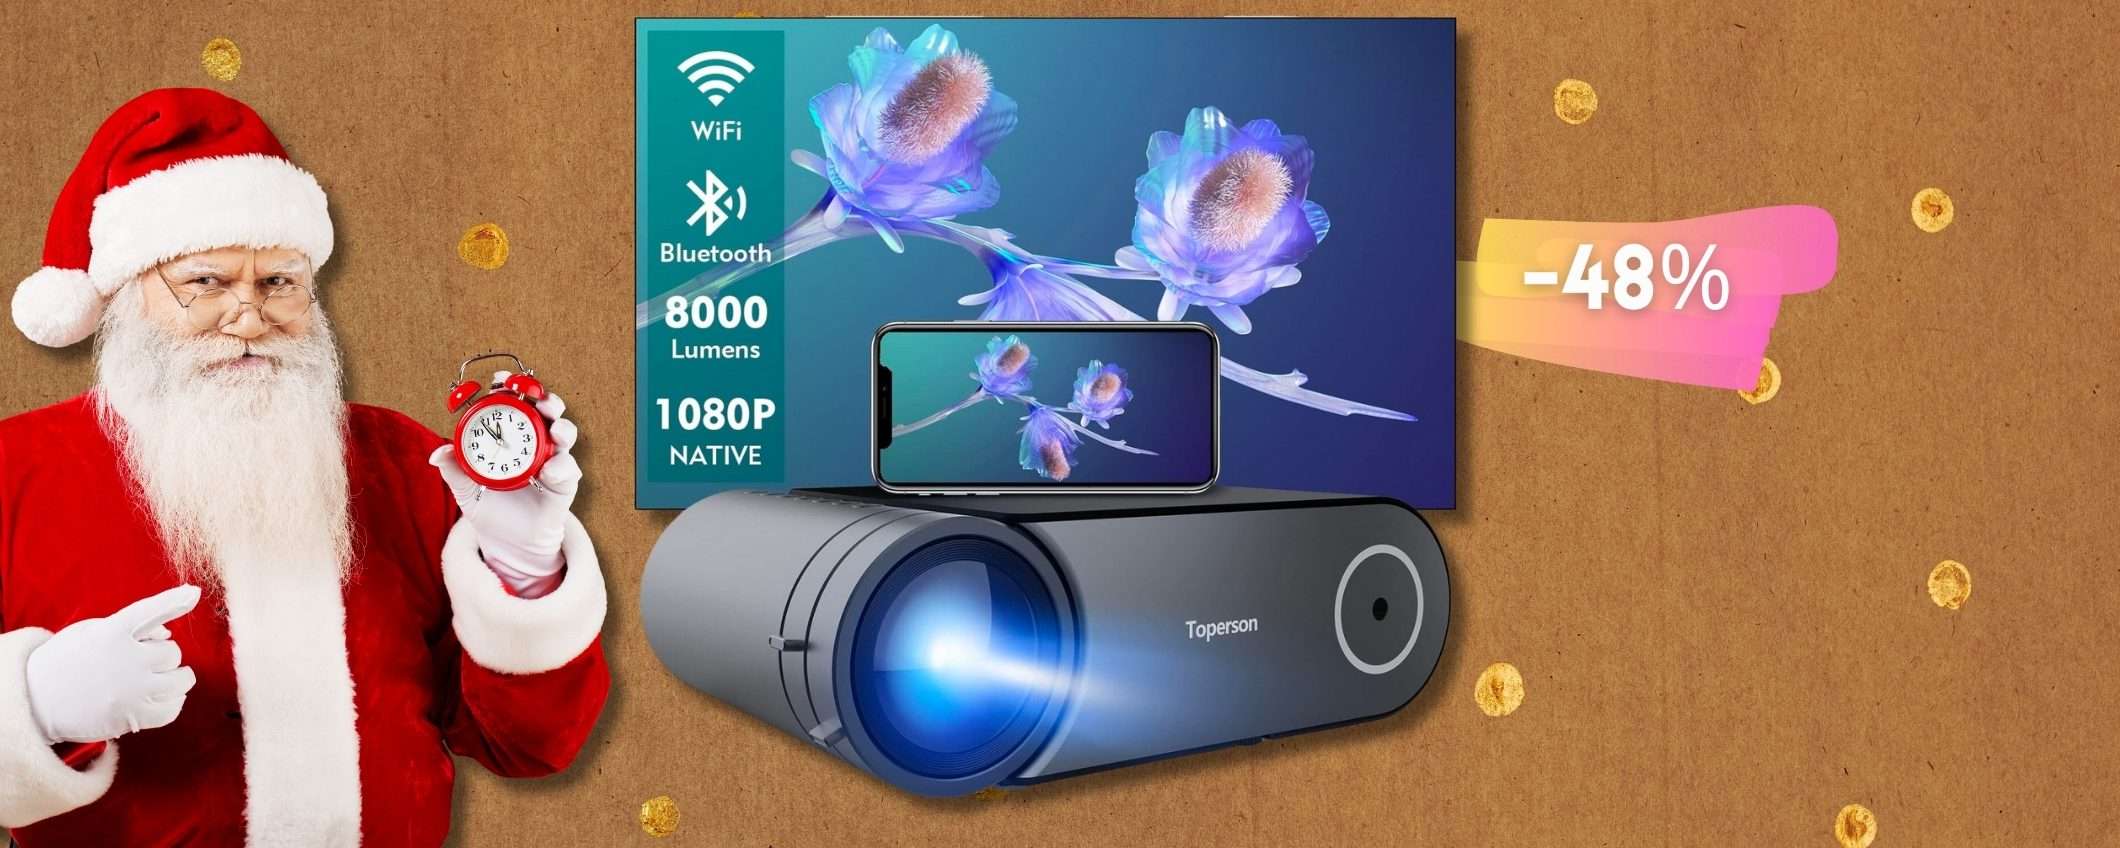 Home cinema di Qualità: proiettore nativo 1080p con WiFi e Bluetooth